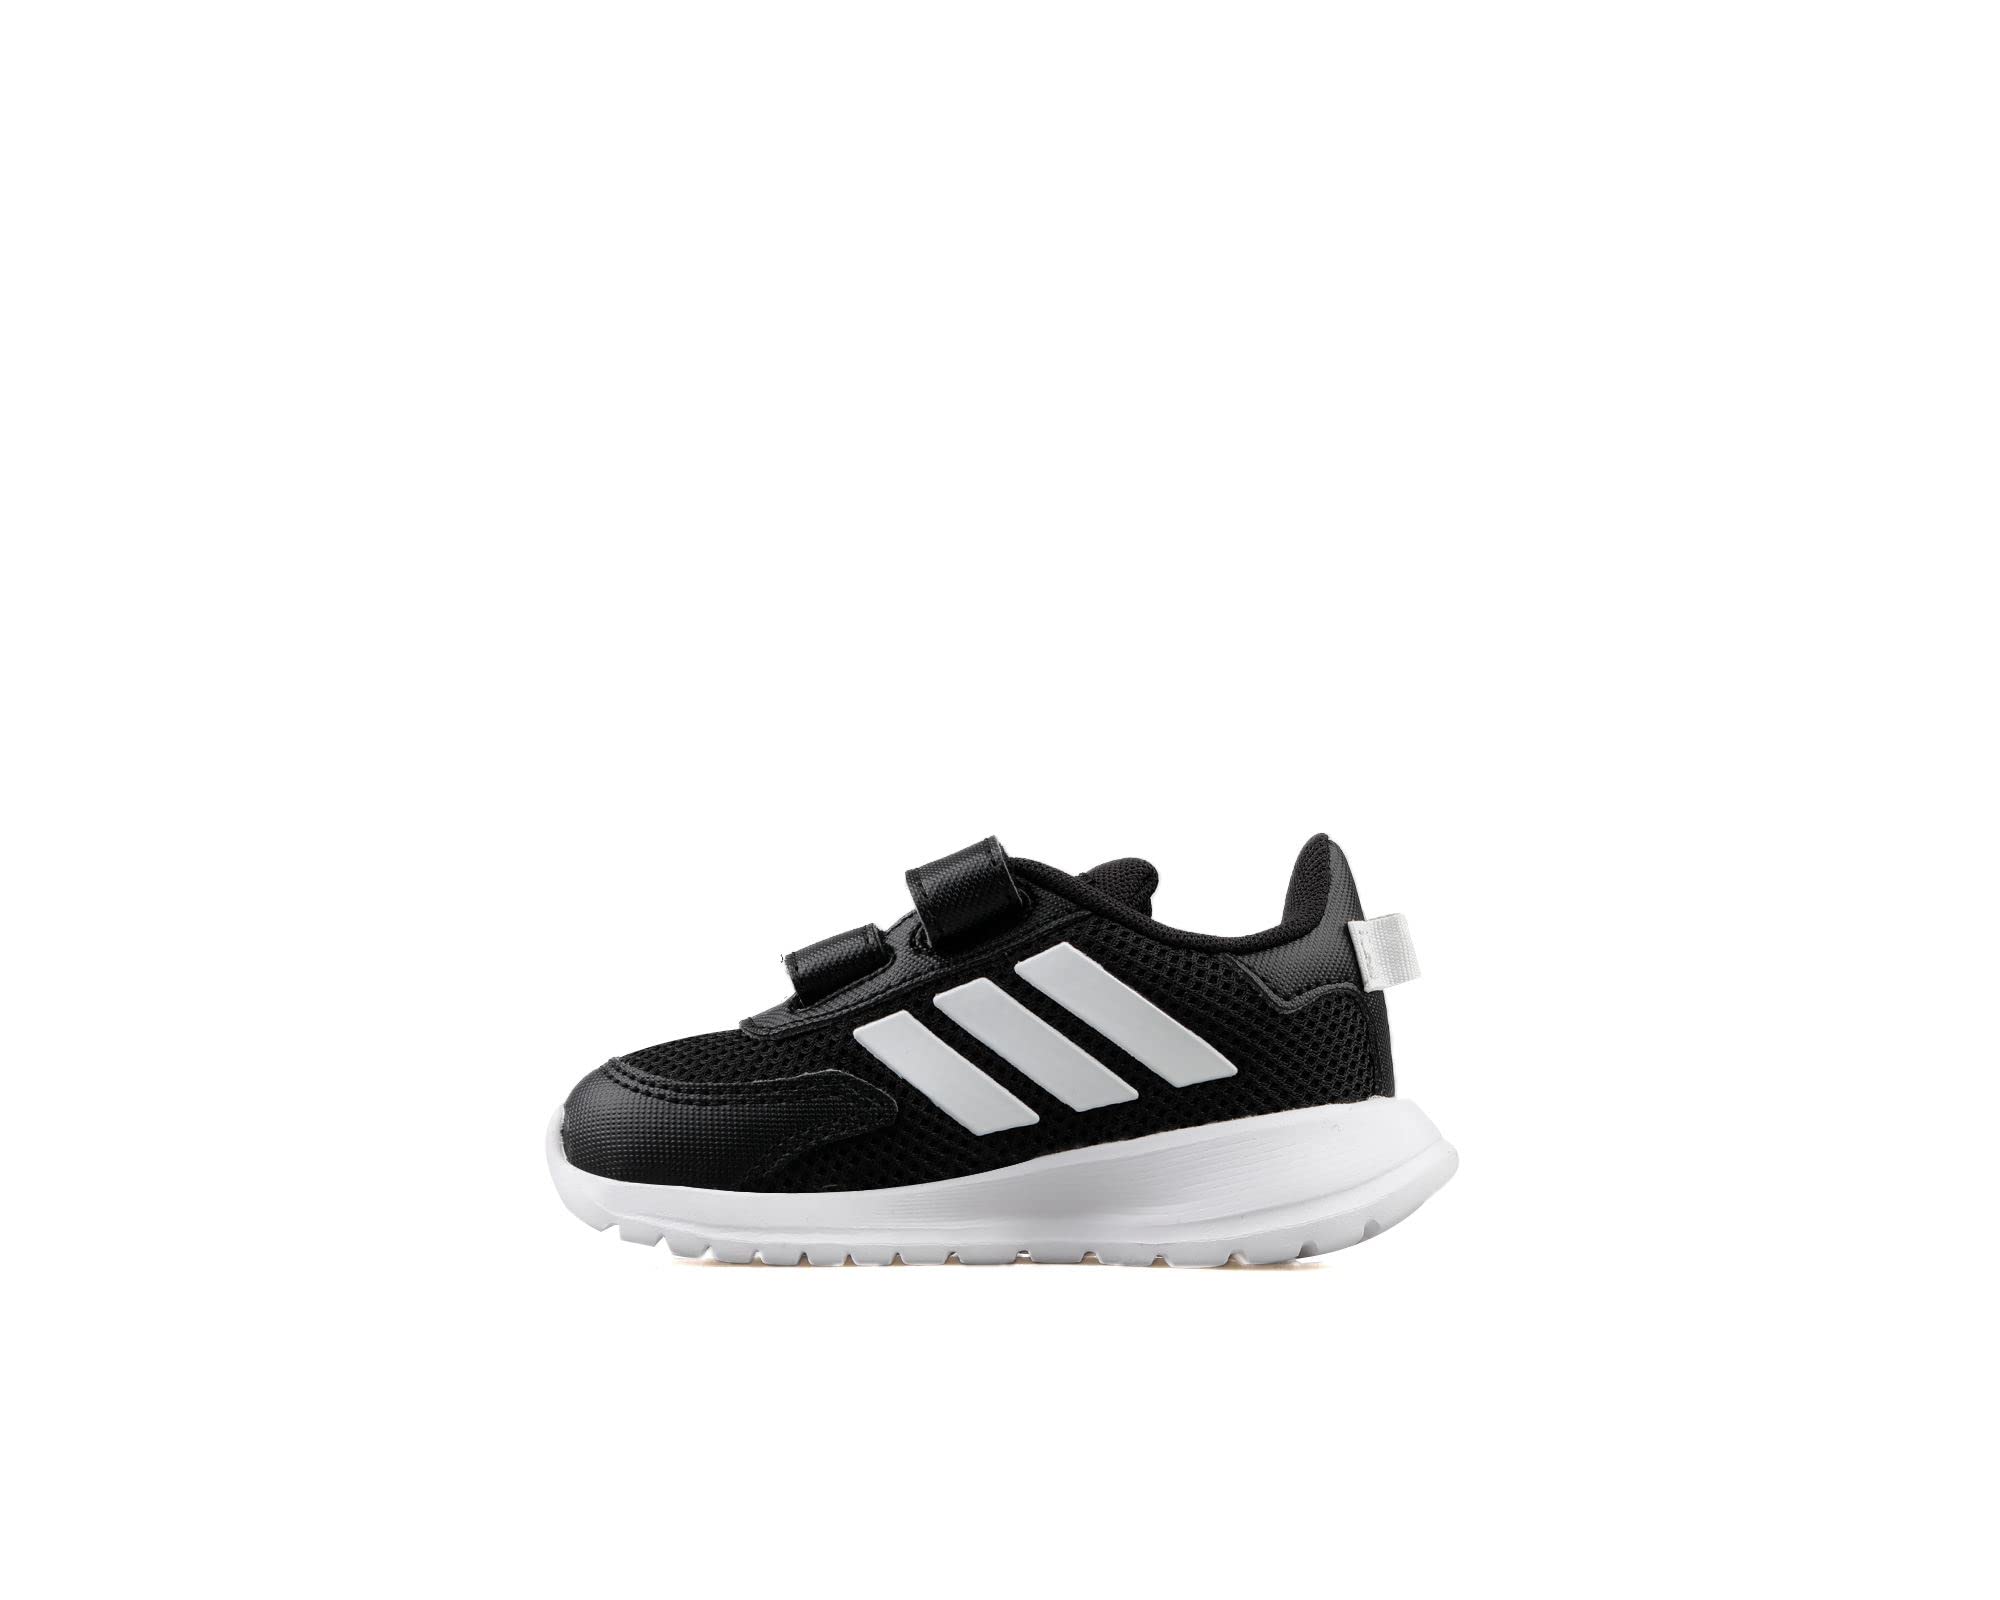 adidas Unisex Baby Tensaur Run Running Shoe, Core Black/Cloud White/Core Black, 20 EU